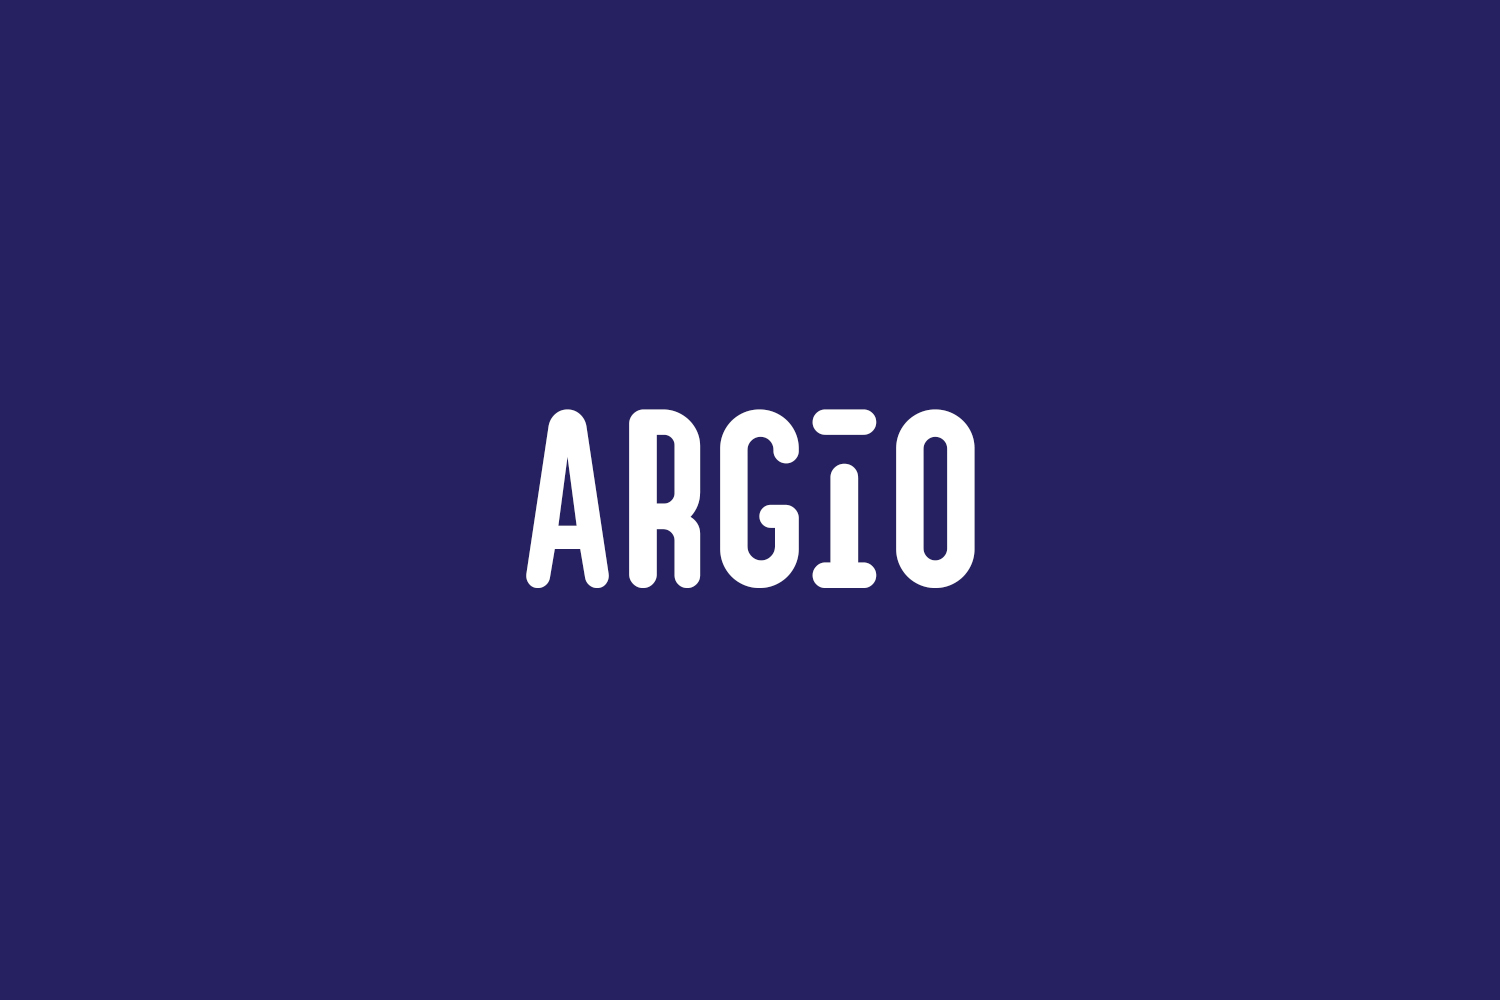 Argio Free Font